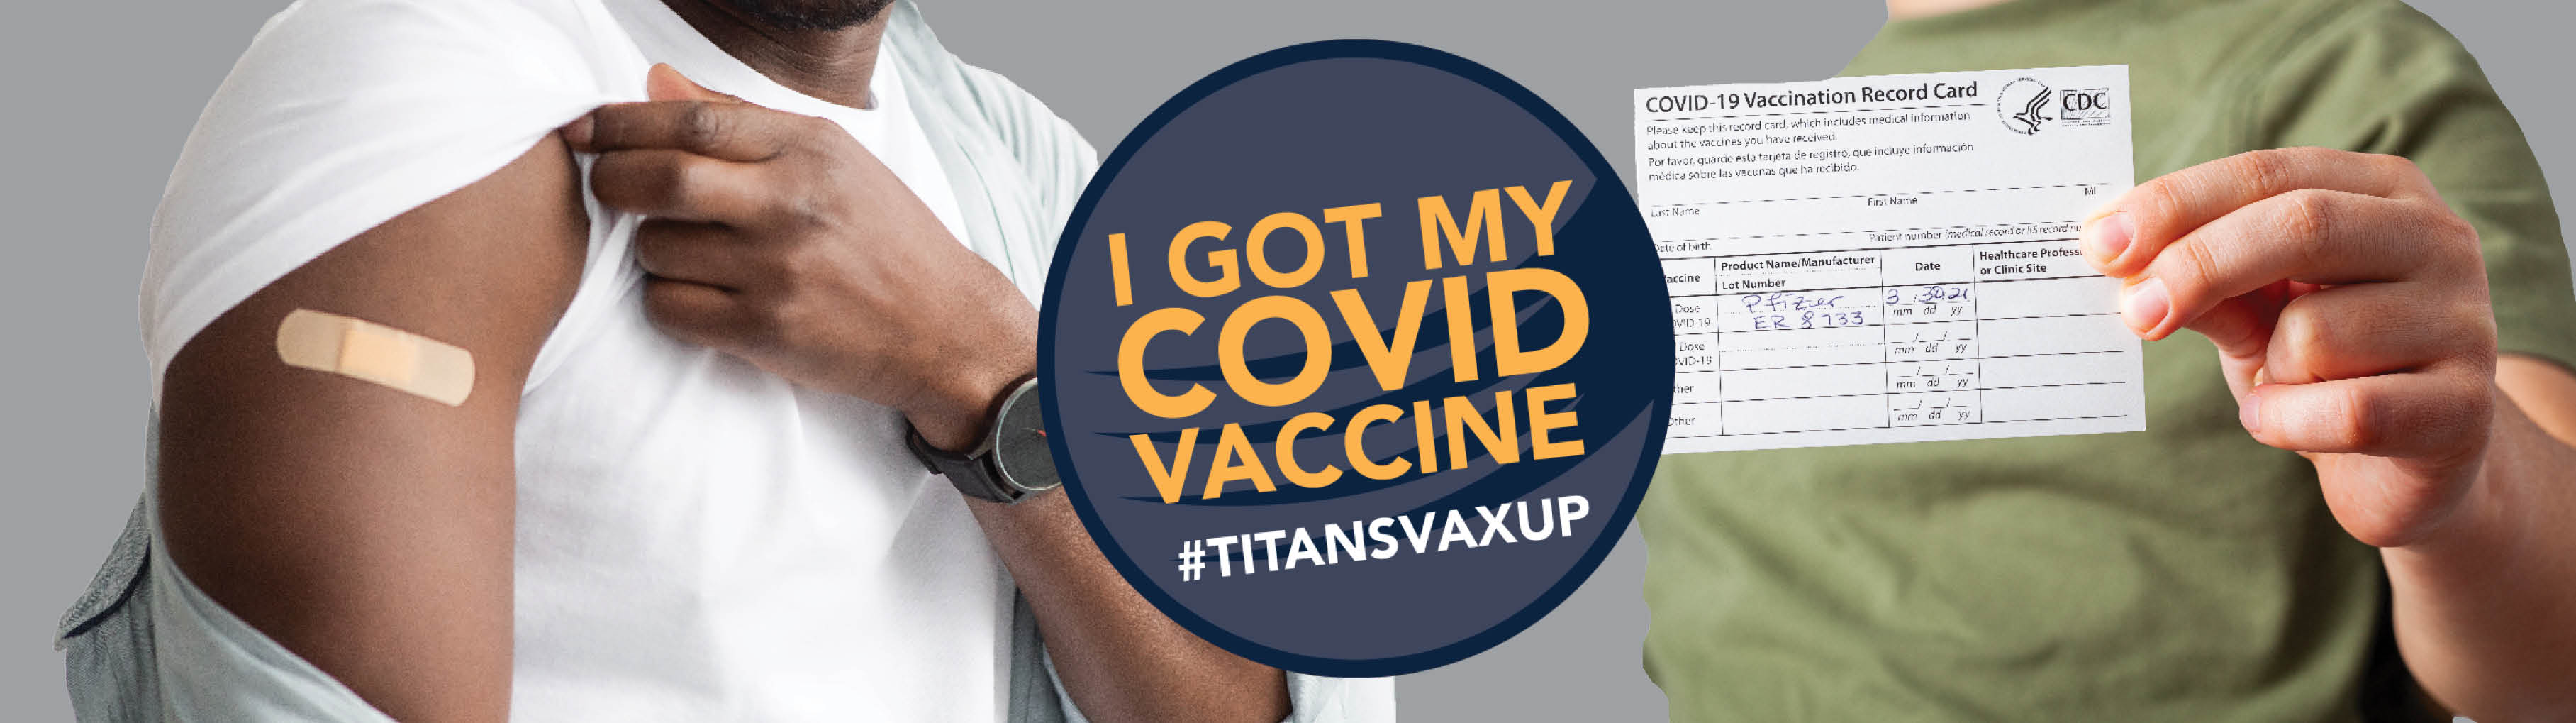 Titans Vax Up